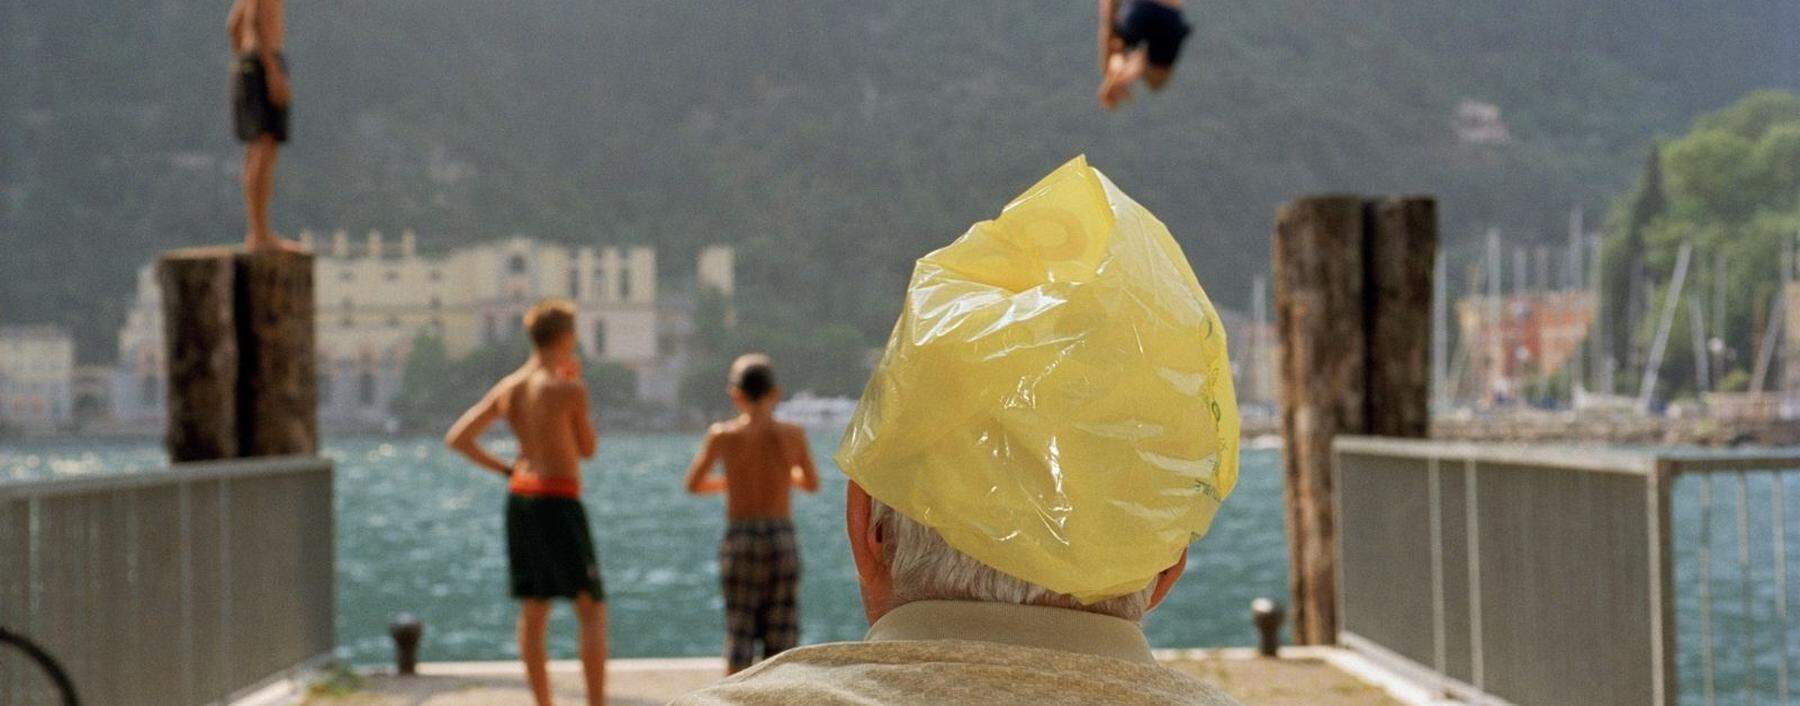 Italien verbinden Besucher mit der Vorstellung eines leichteren Lebensgefühls. Gardasee 1999.